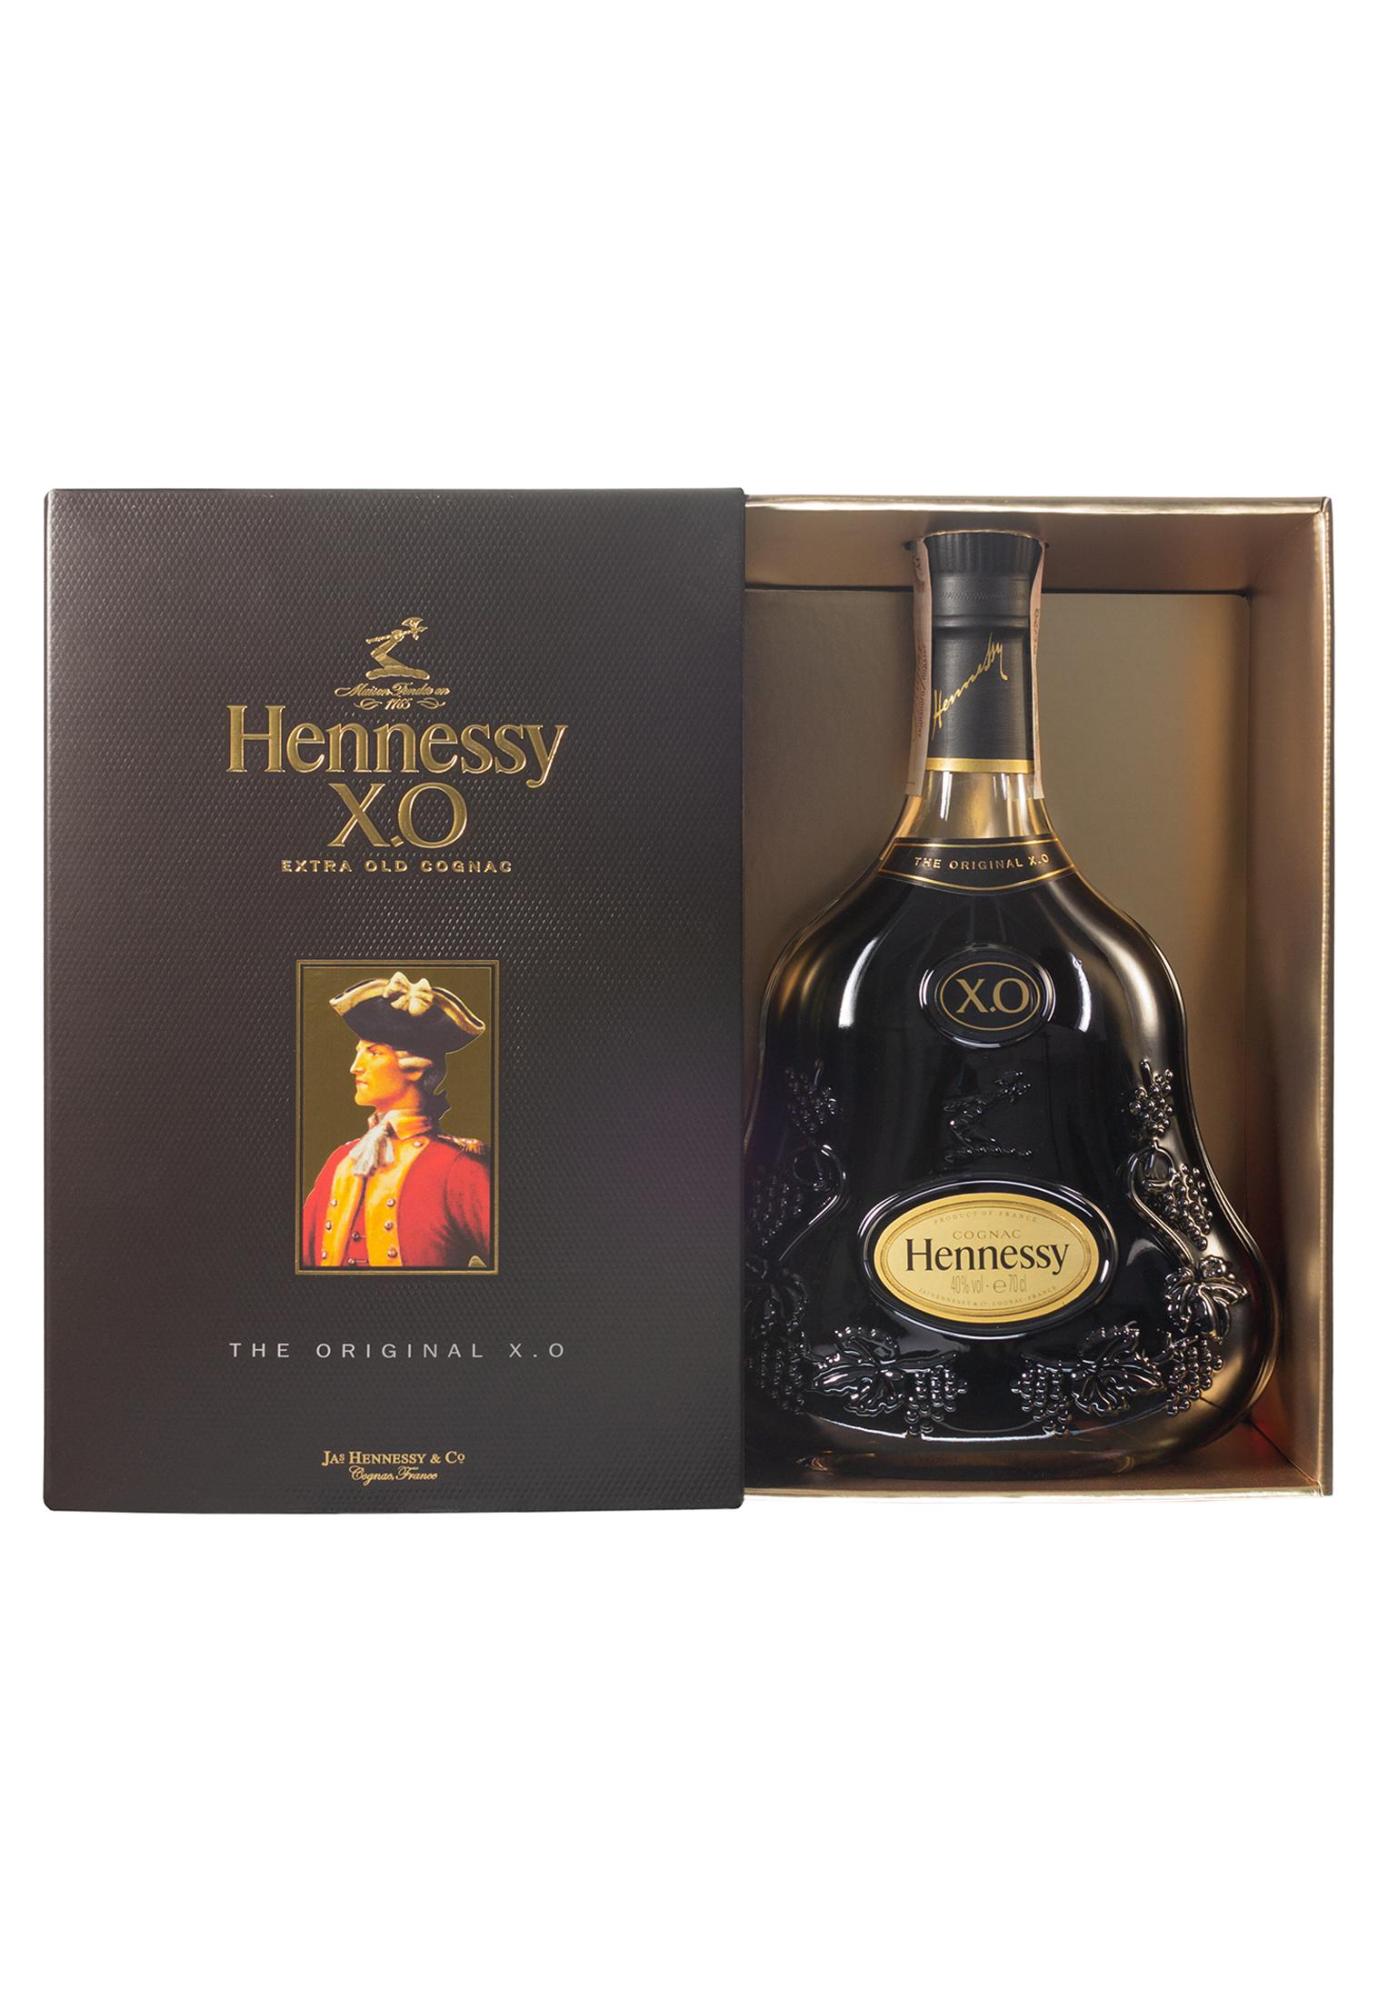 Цена коньяка хеннесси 0.7. Hennessy коньяк 0.7. Хеннесси Хо 0.7. Hennessy коньяк х.о. 0,7 л. Хеннесси Хо 0.7 коробка.